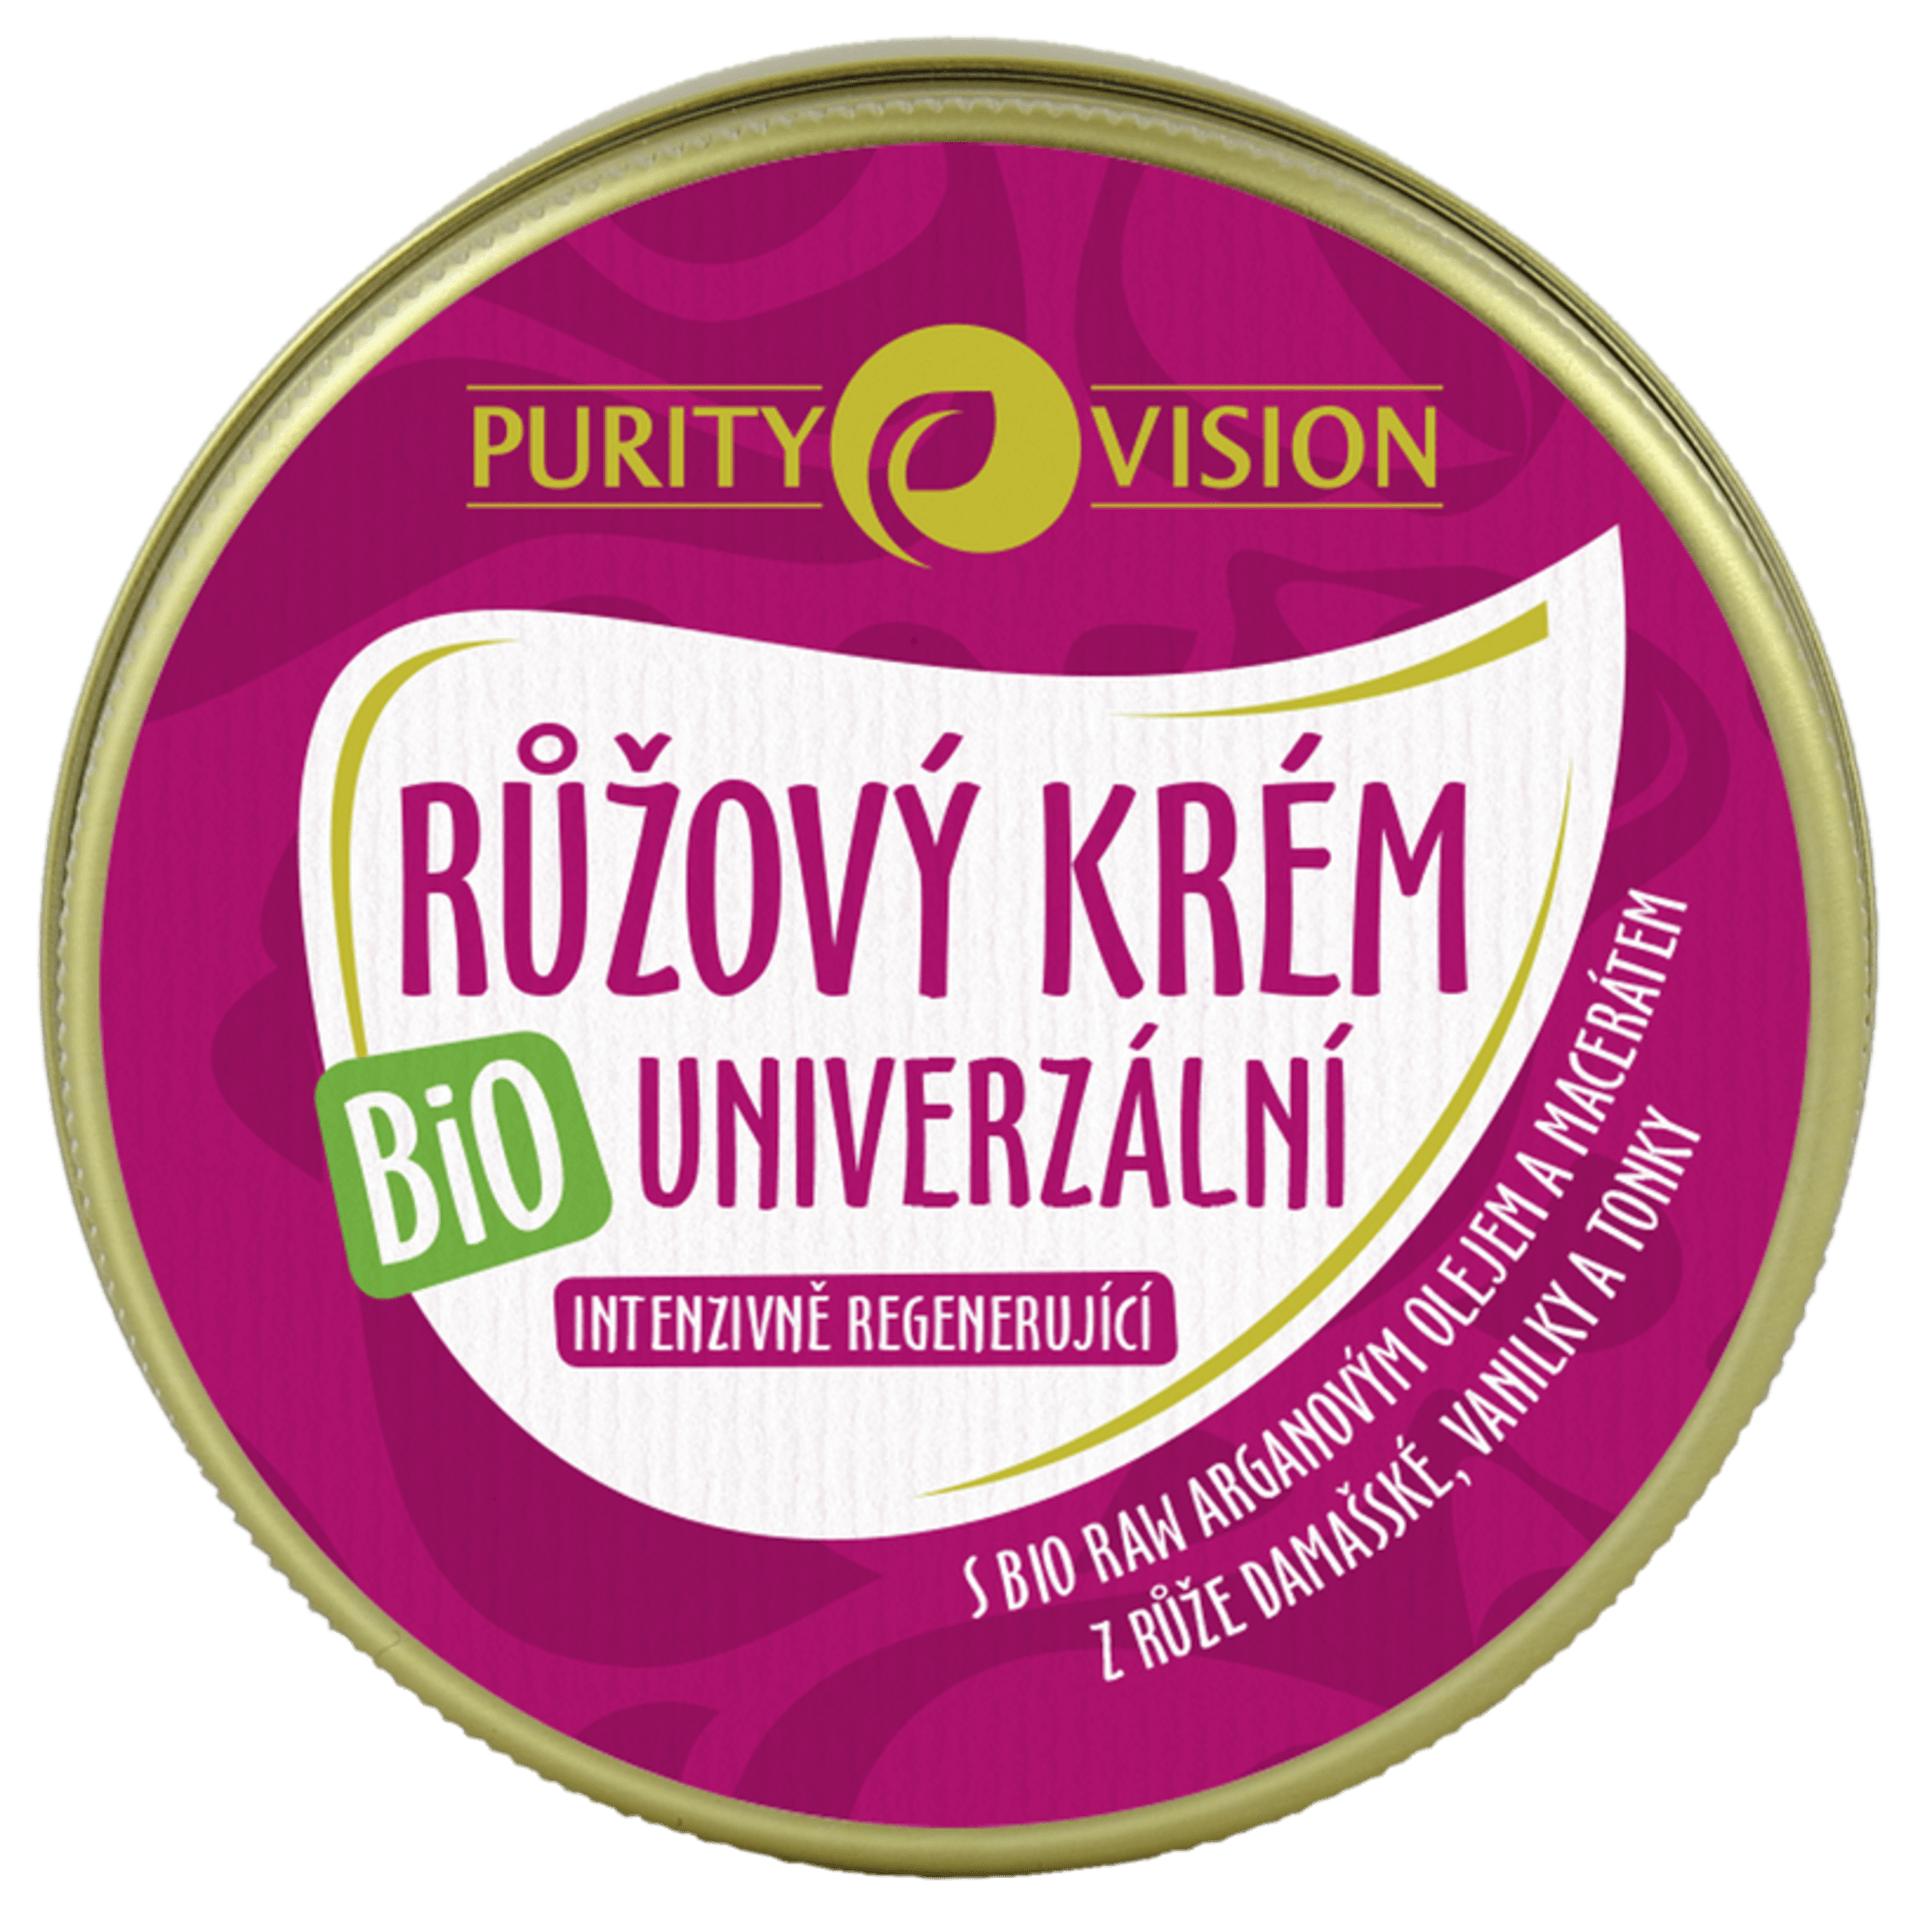 Purity Vision Růžový krém univerzální BIO 70 ml